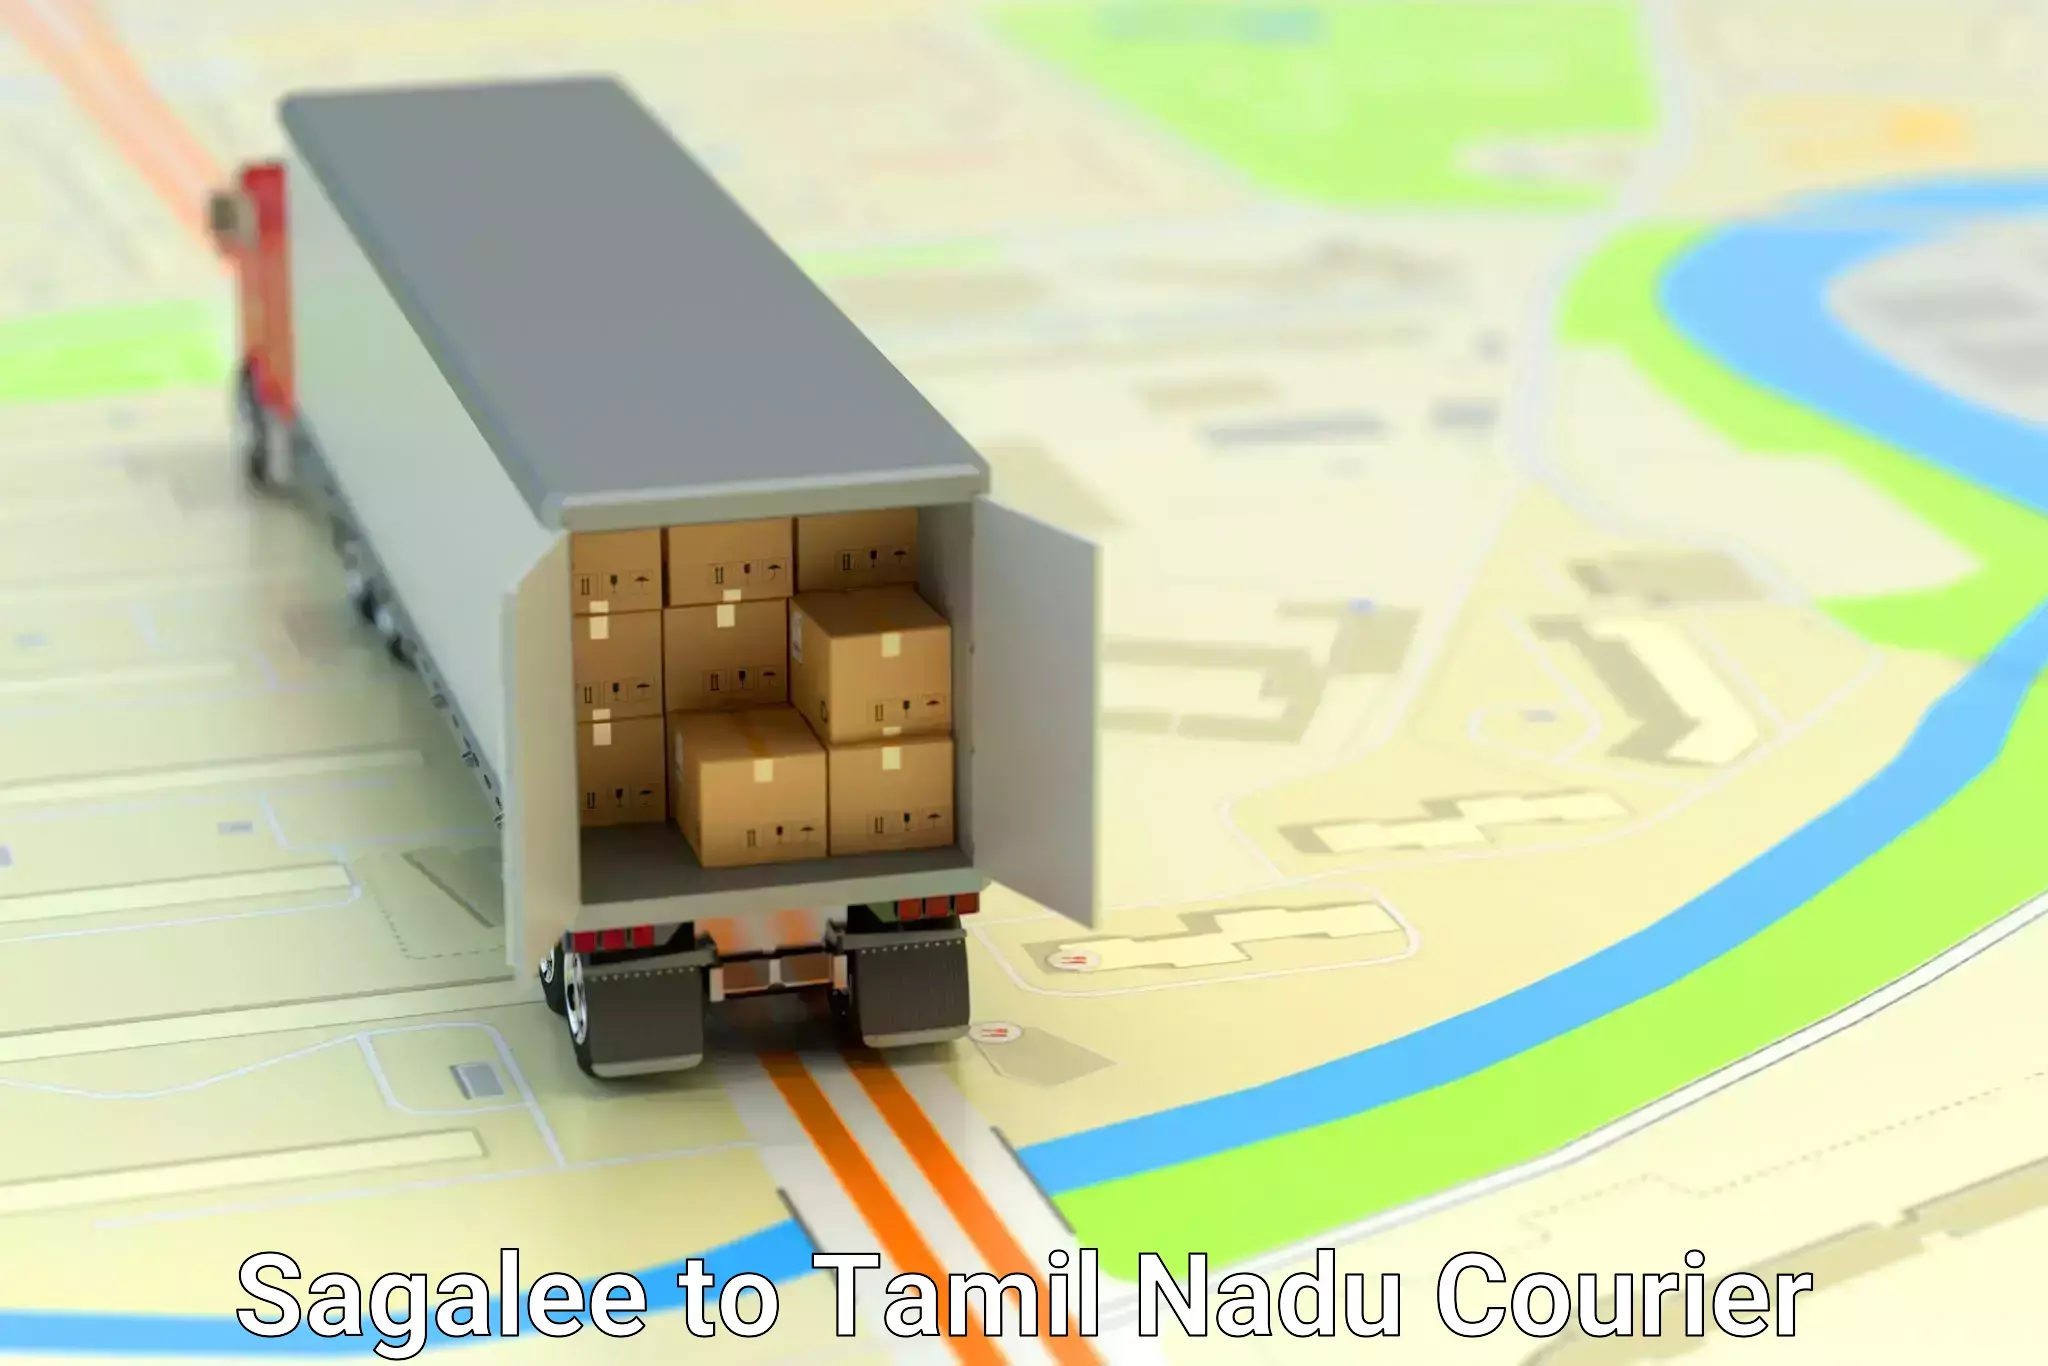 Individual parcel service Sagalee to Tamil Nadu